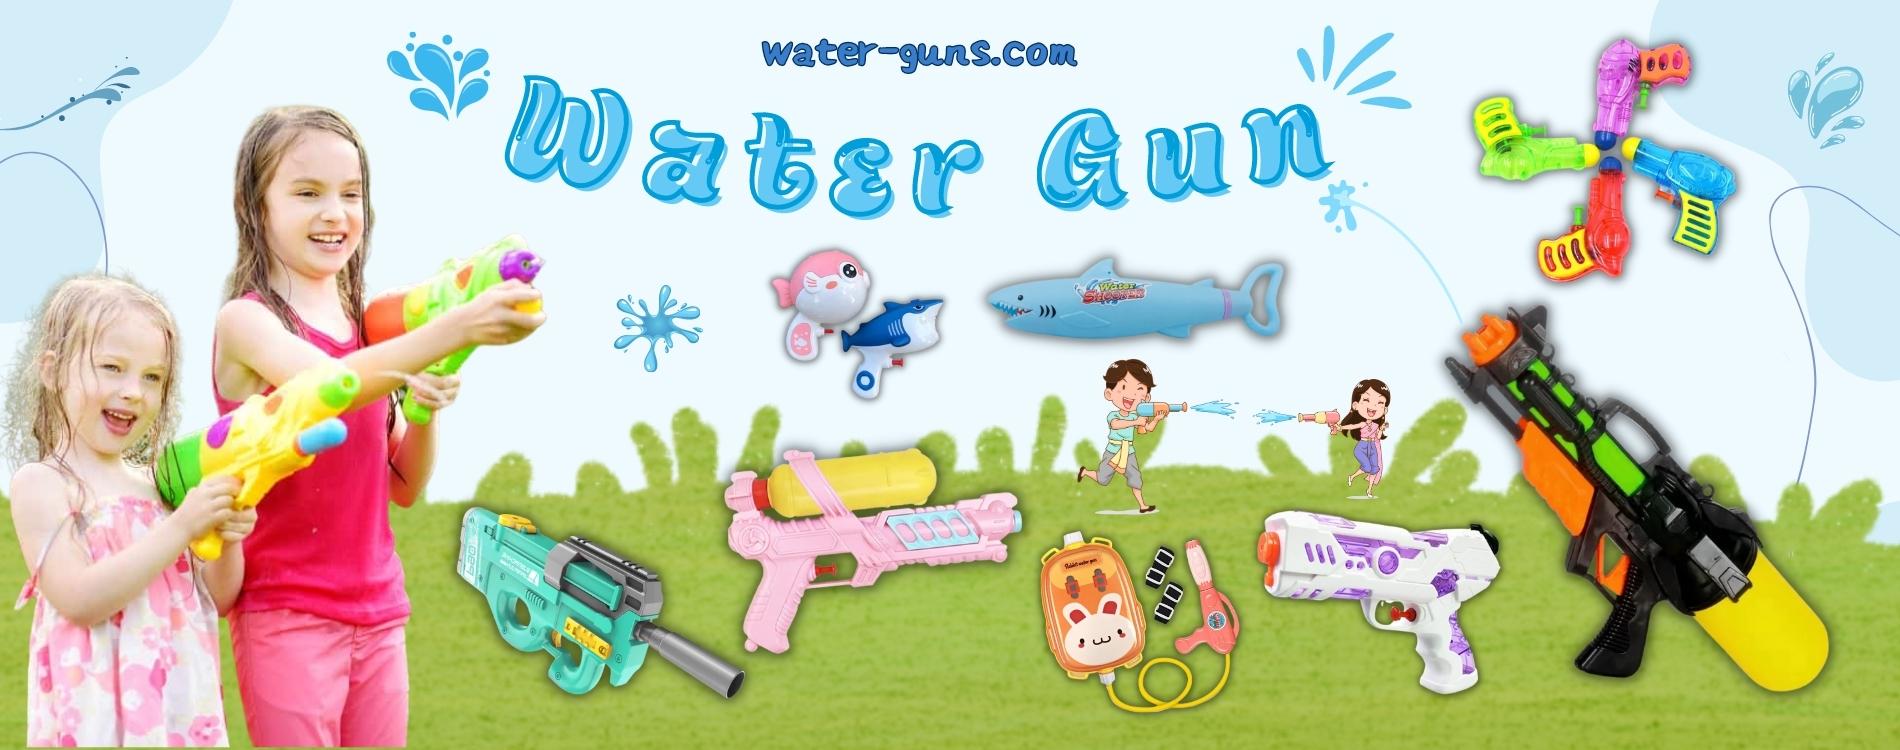 water gun banner 2